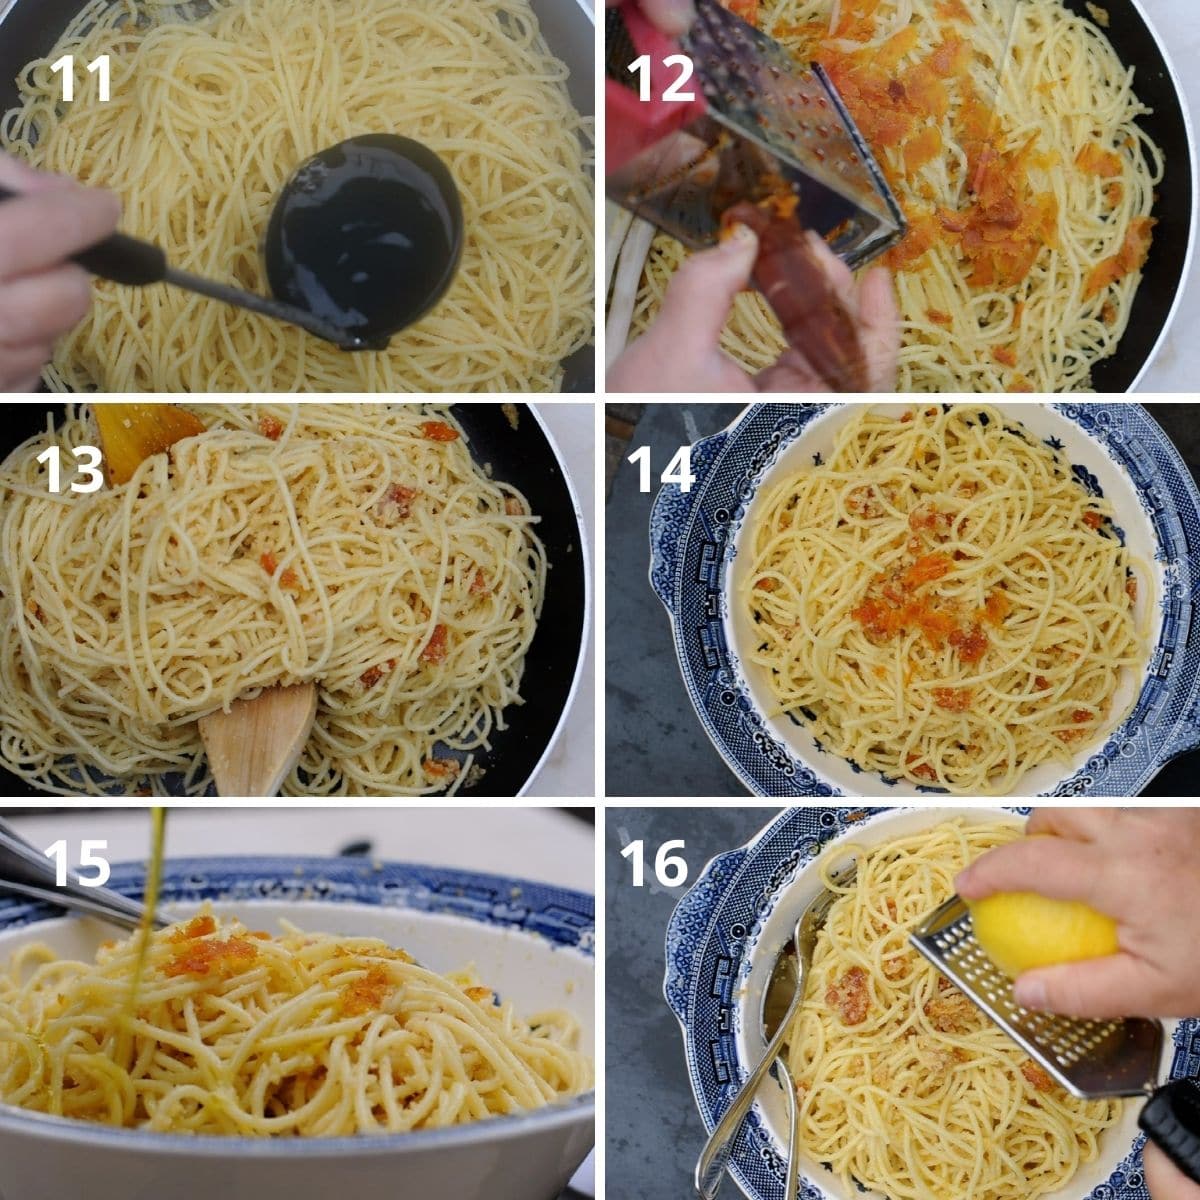 Spaghetti Alla Bottarga Di Muggine - Mullet Roe